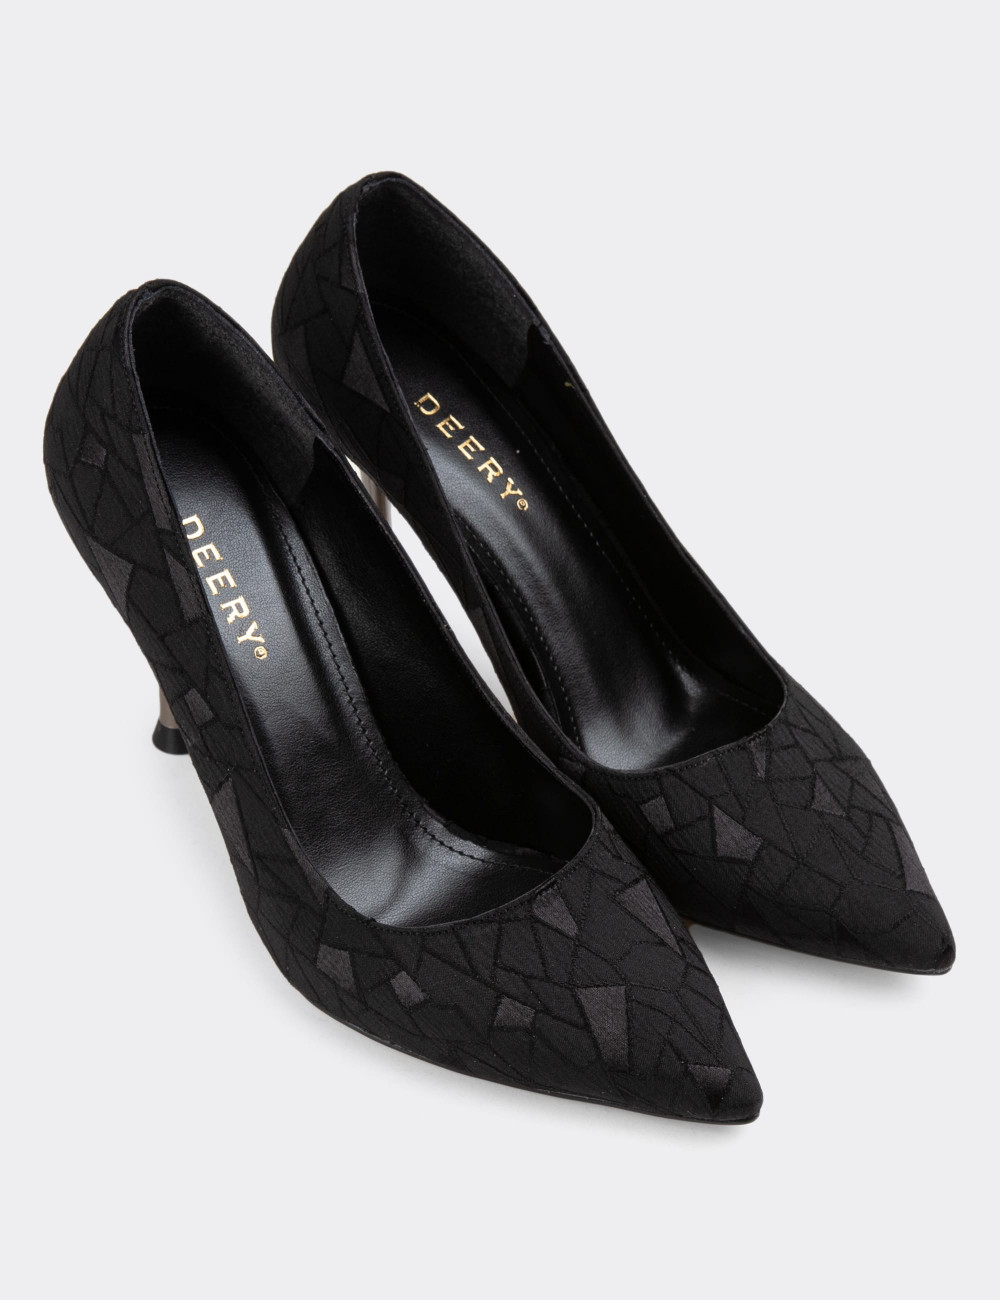 Siyah Stiletto Kadın Topuklu Ayakkabı - K0795ZSYHM01